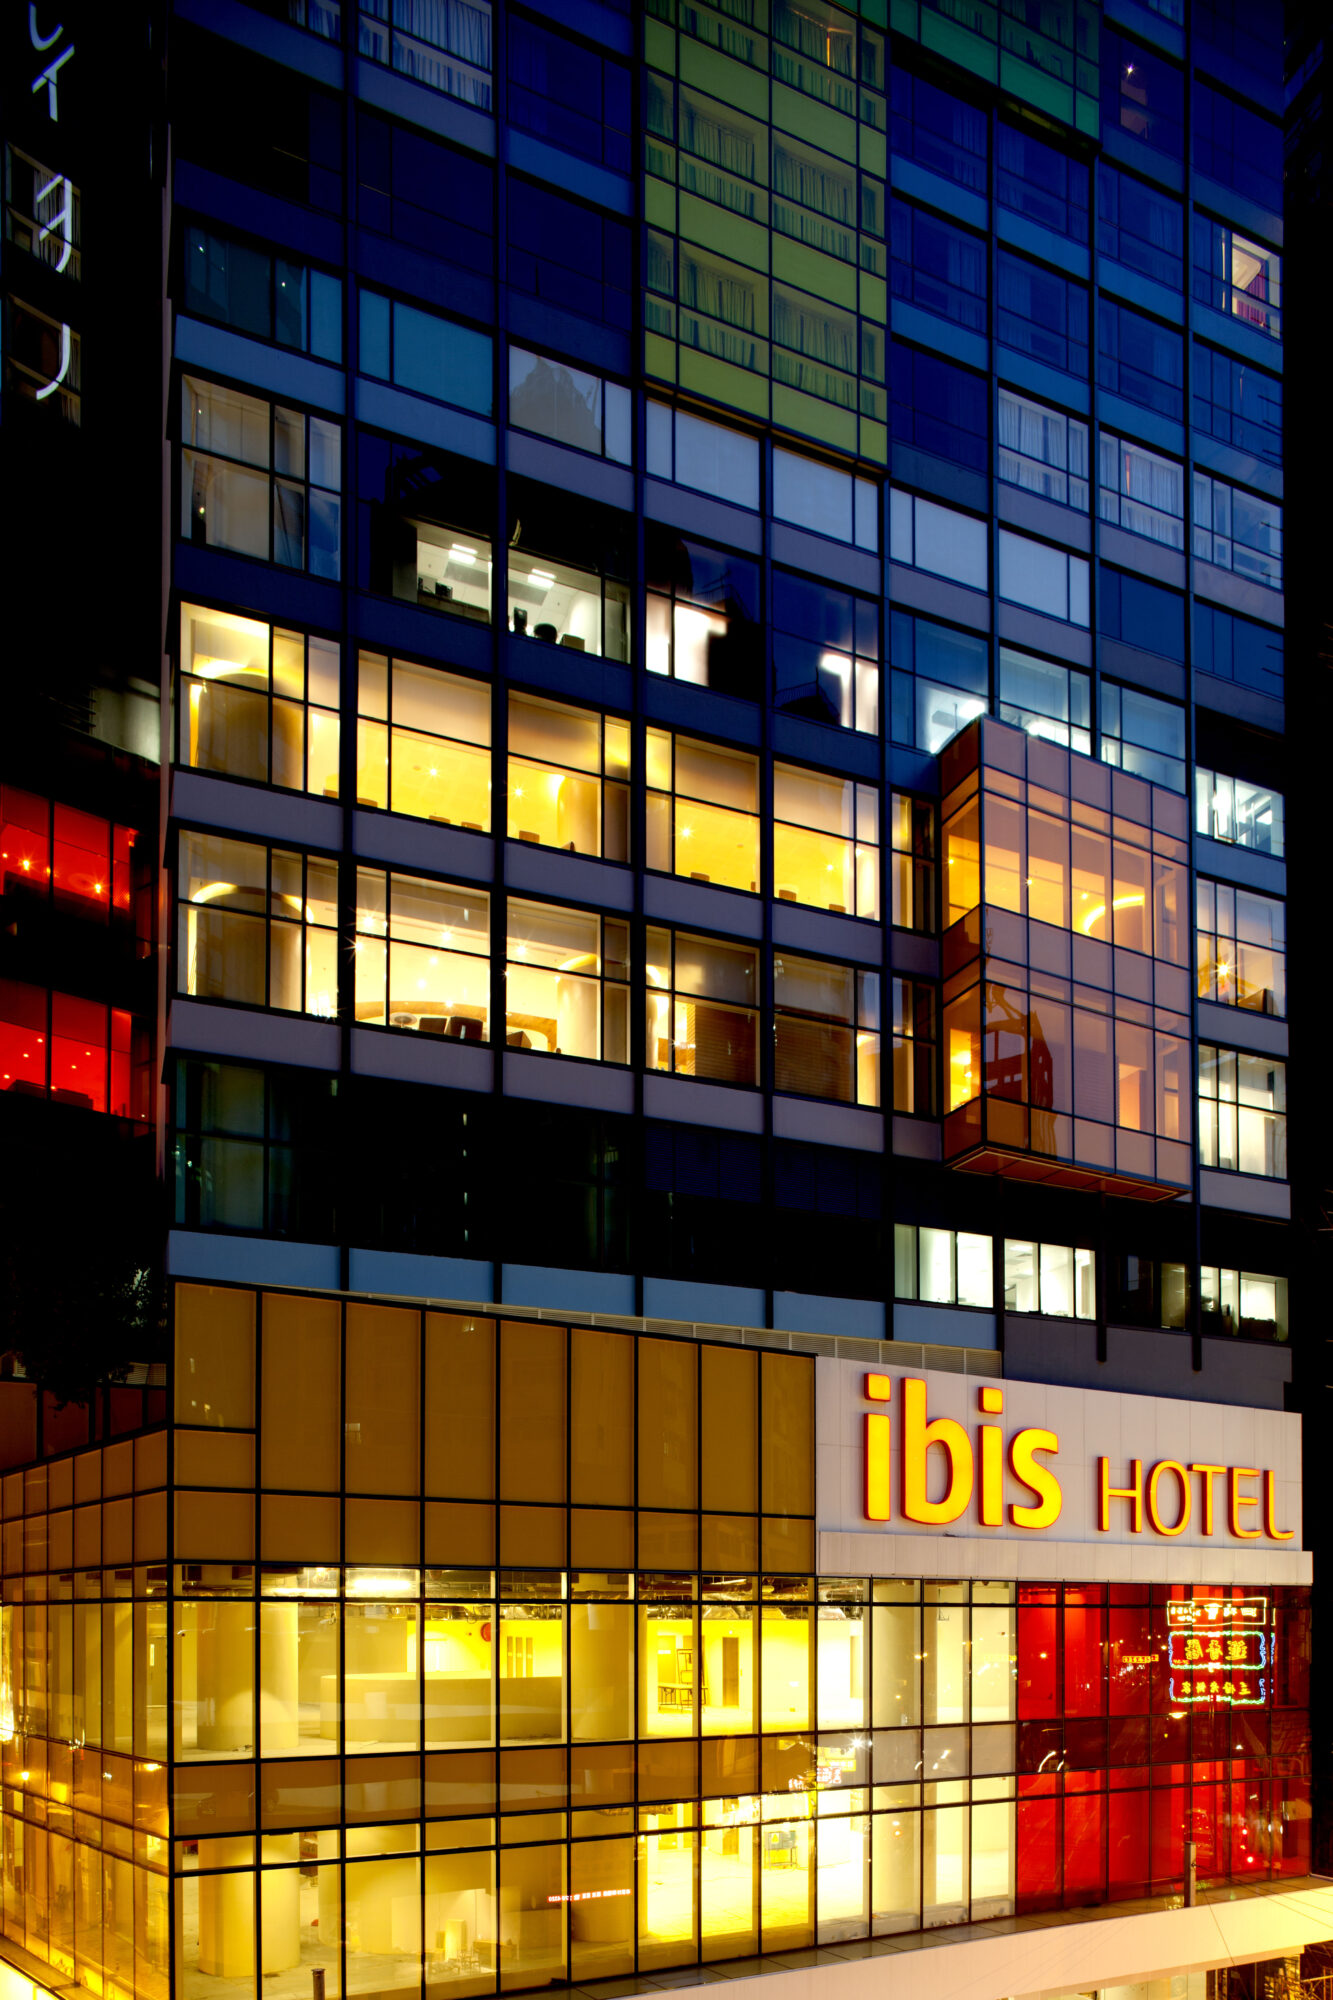 宜必思香港中上环酒店 Ibis HK Central - exterior night shot .jpg